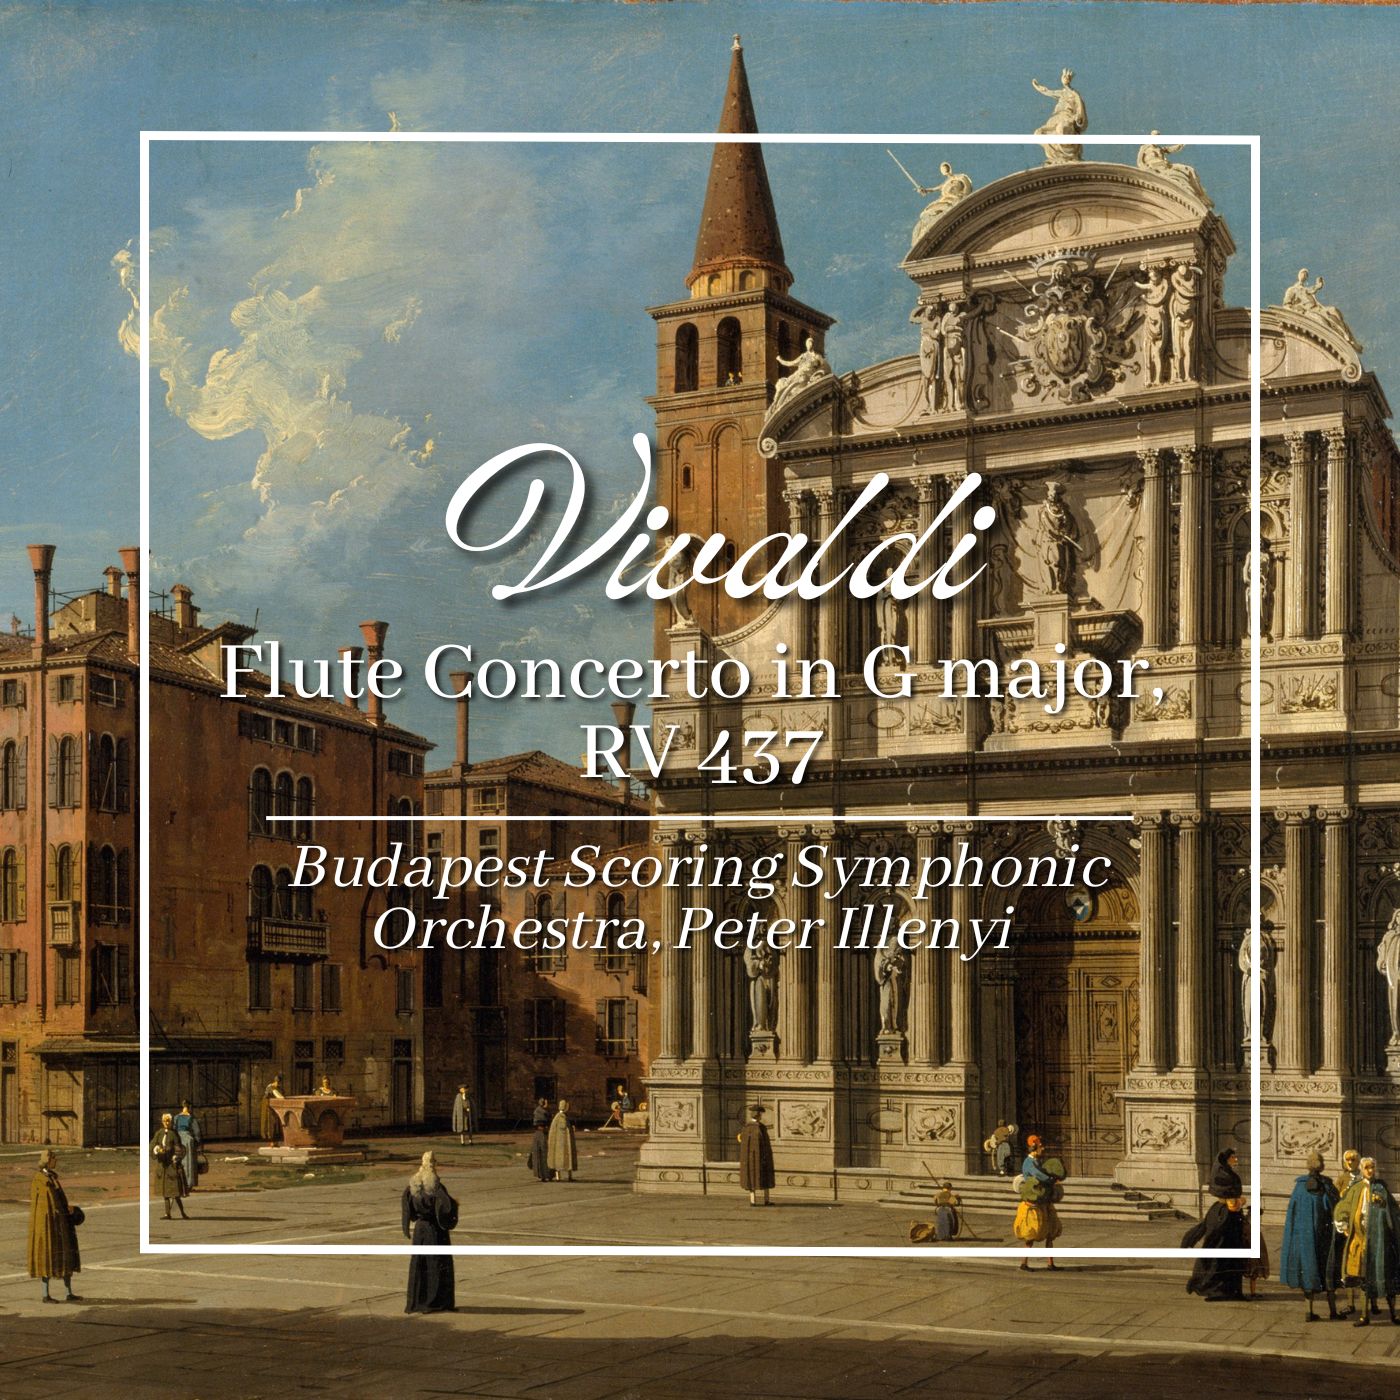 Vivaldi: Flute Concerto in G major, RV 437